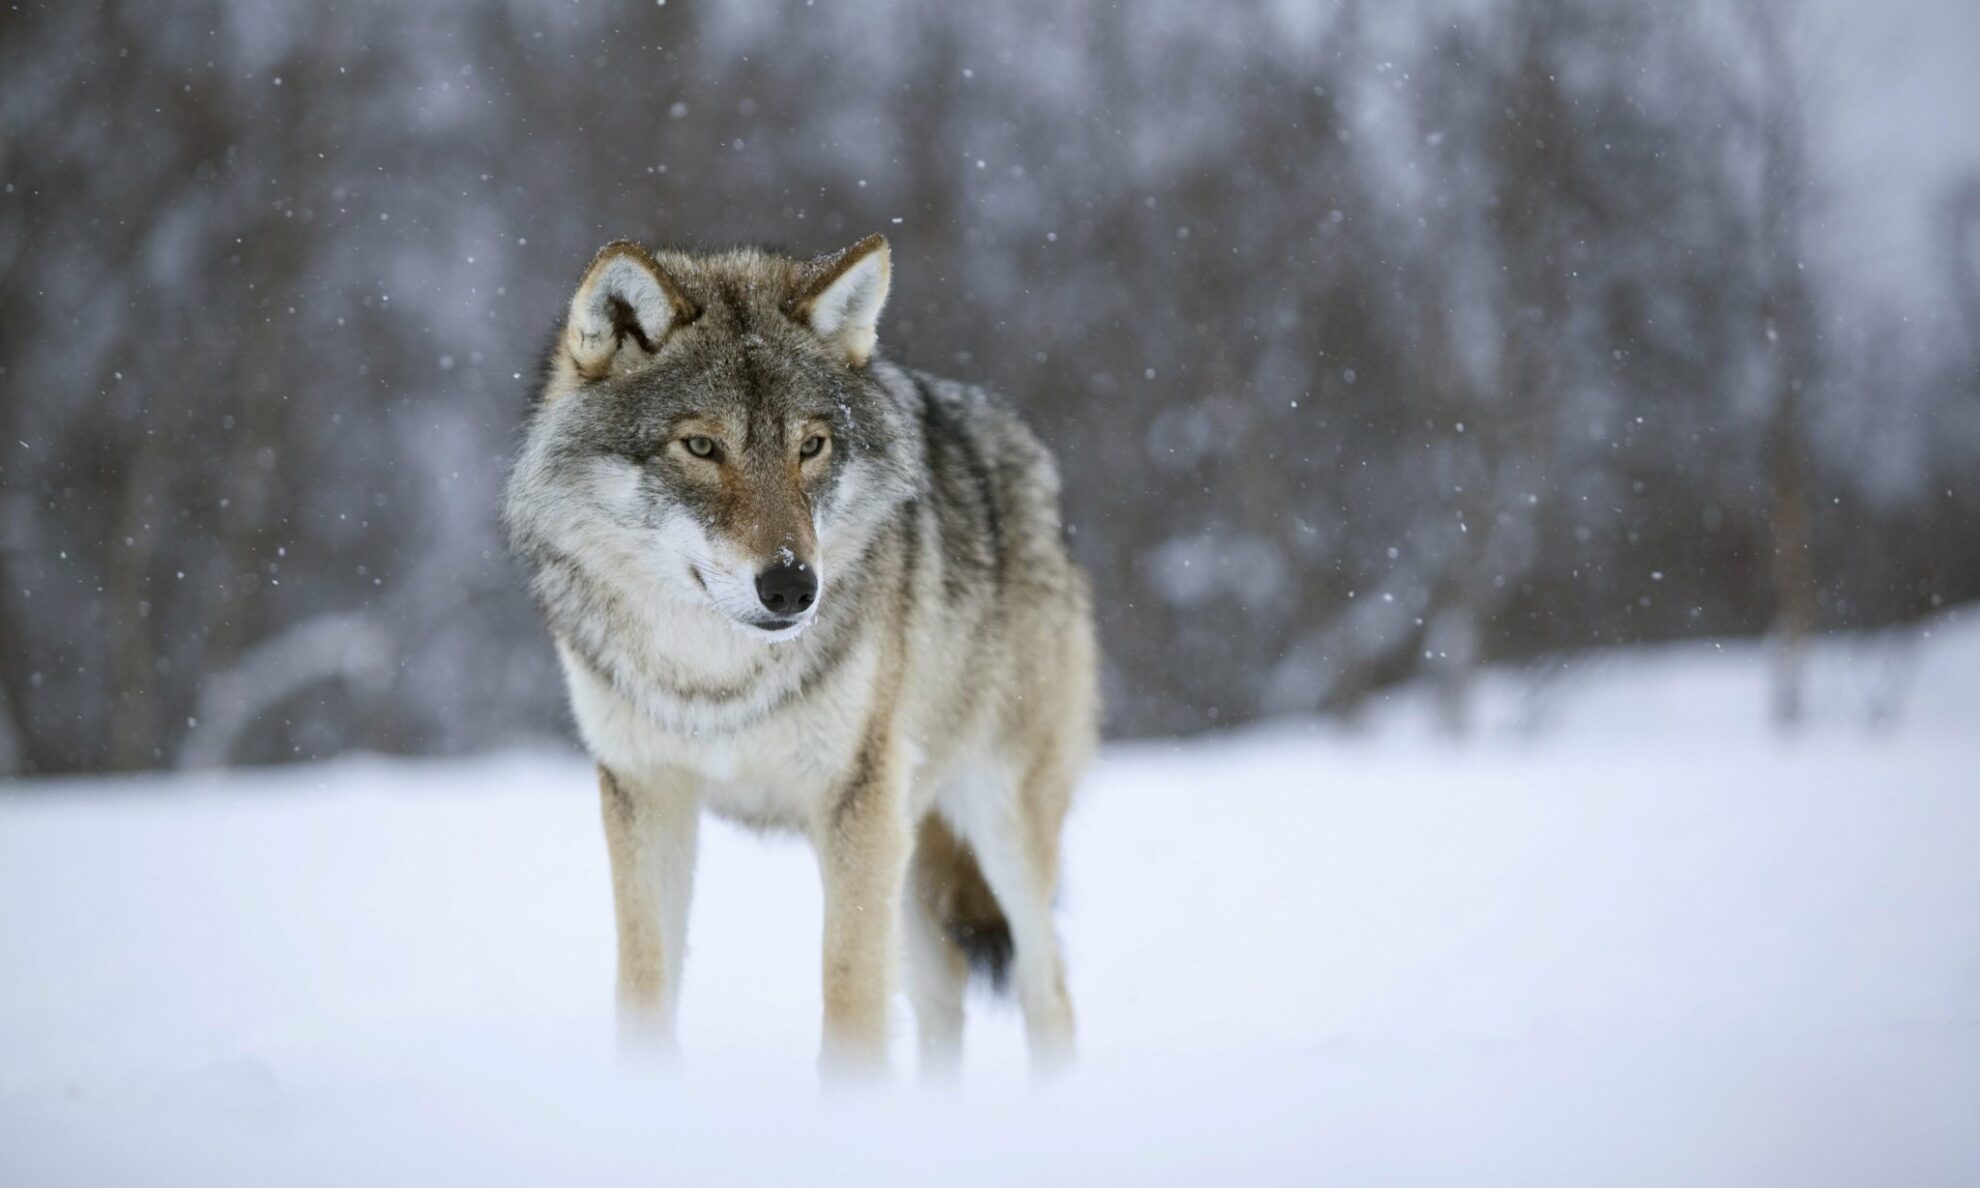 Lietuvoje sumedžiojus leistą 190 vilkų limitą, užvakar paskelbta šių žvėrių medžioklės pabaiga. Panevėžio medžiotojai per sezoną, trukusį nuo spalio vidurio, nušovė tris vilkus.